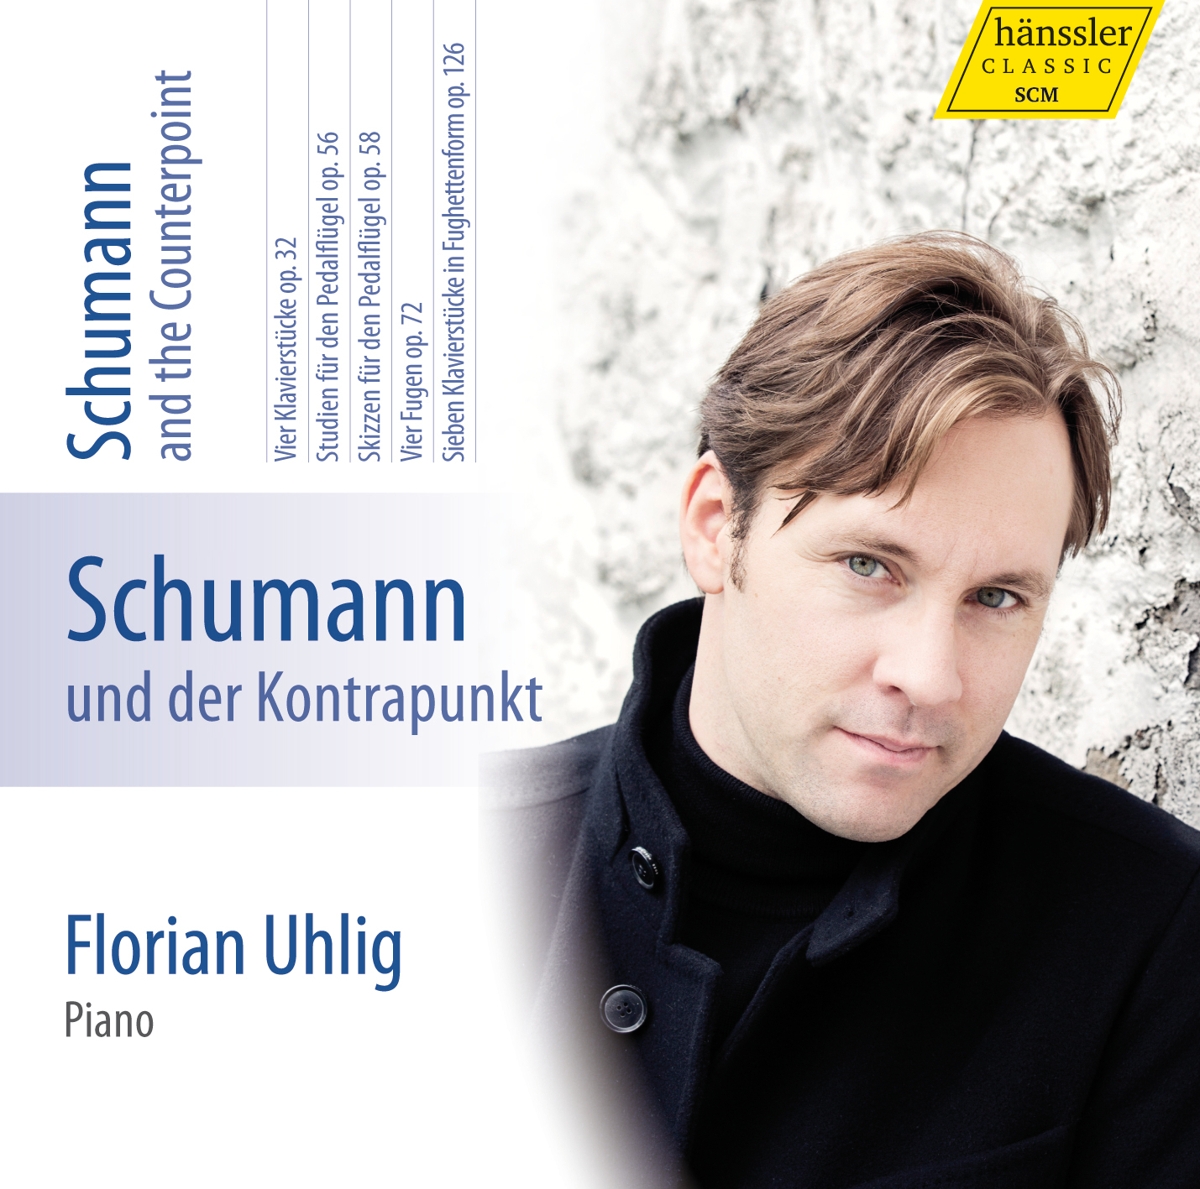 Schumann und der Kontapunkt